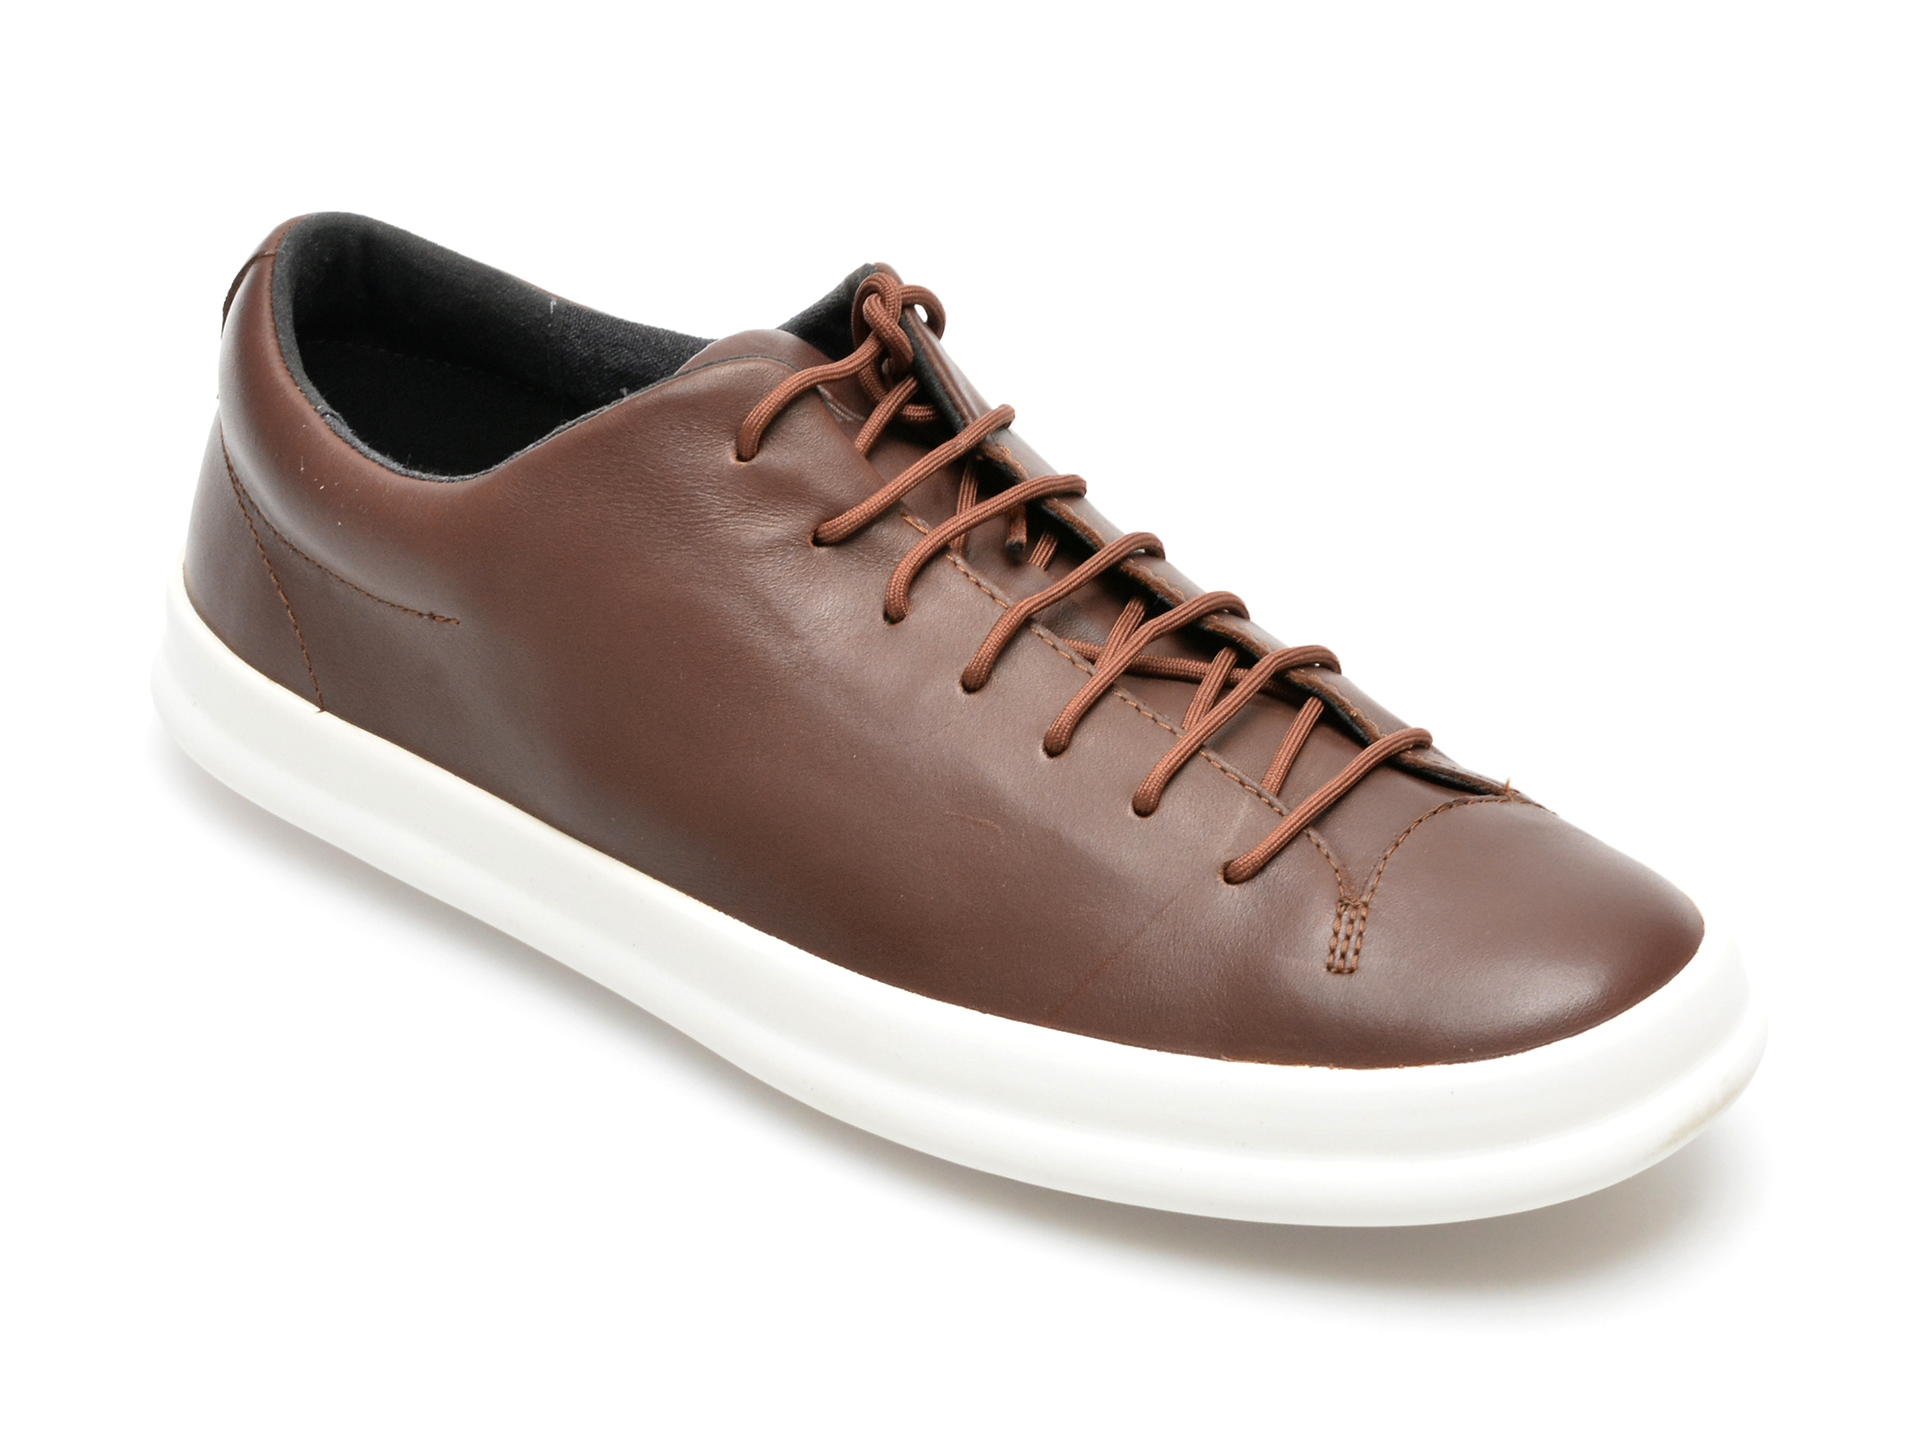 Pantofi CAMPER maro, K100373, din piele naturala /barbati/pantofi